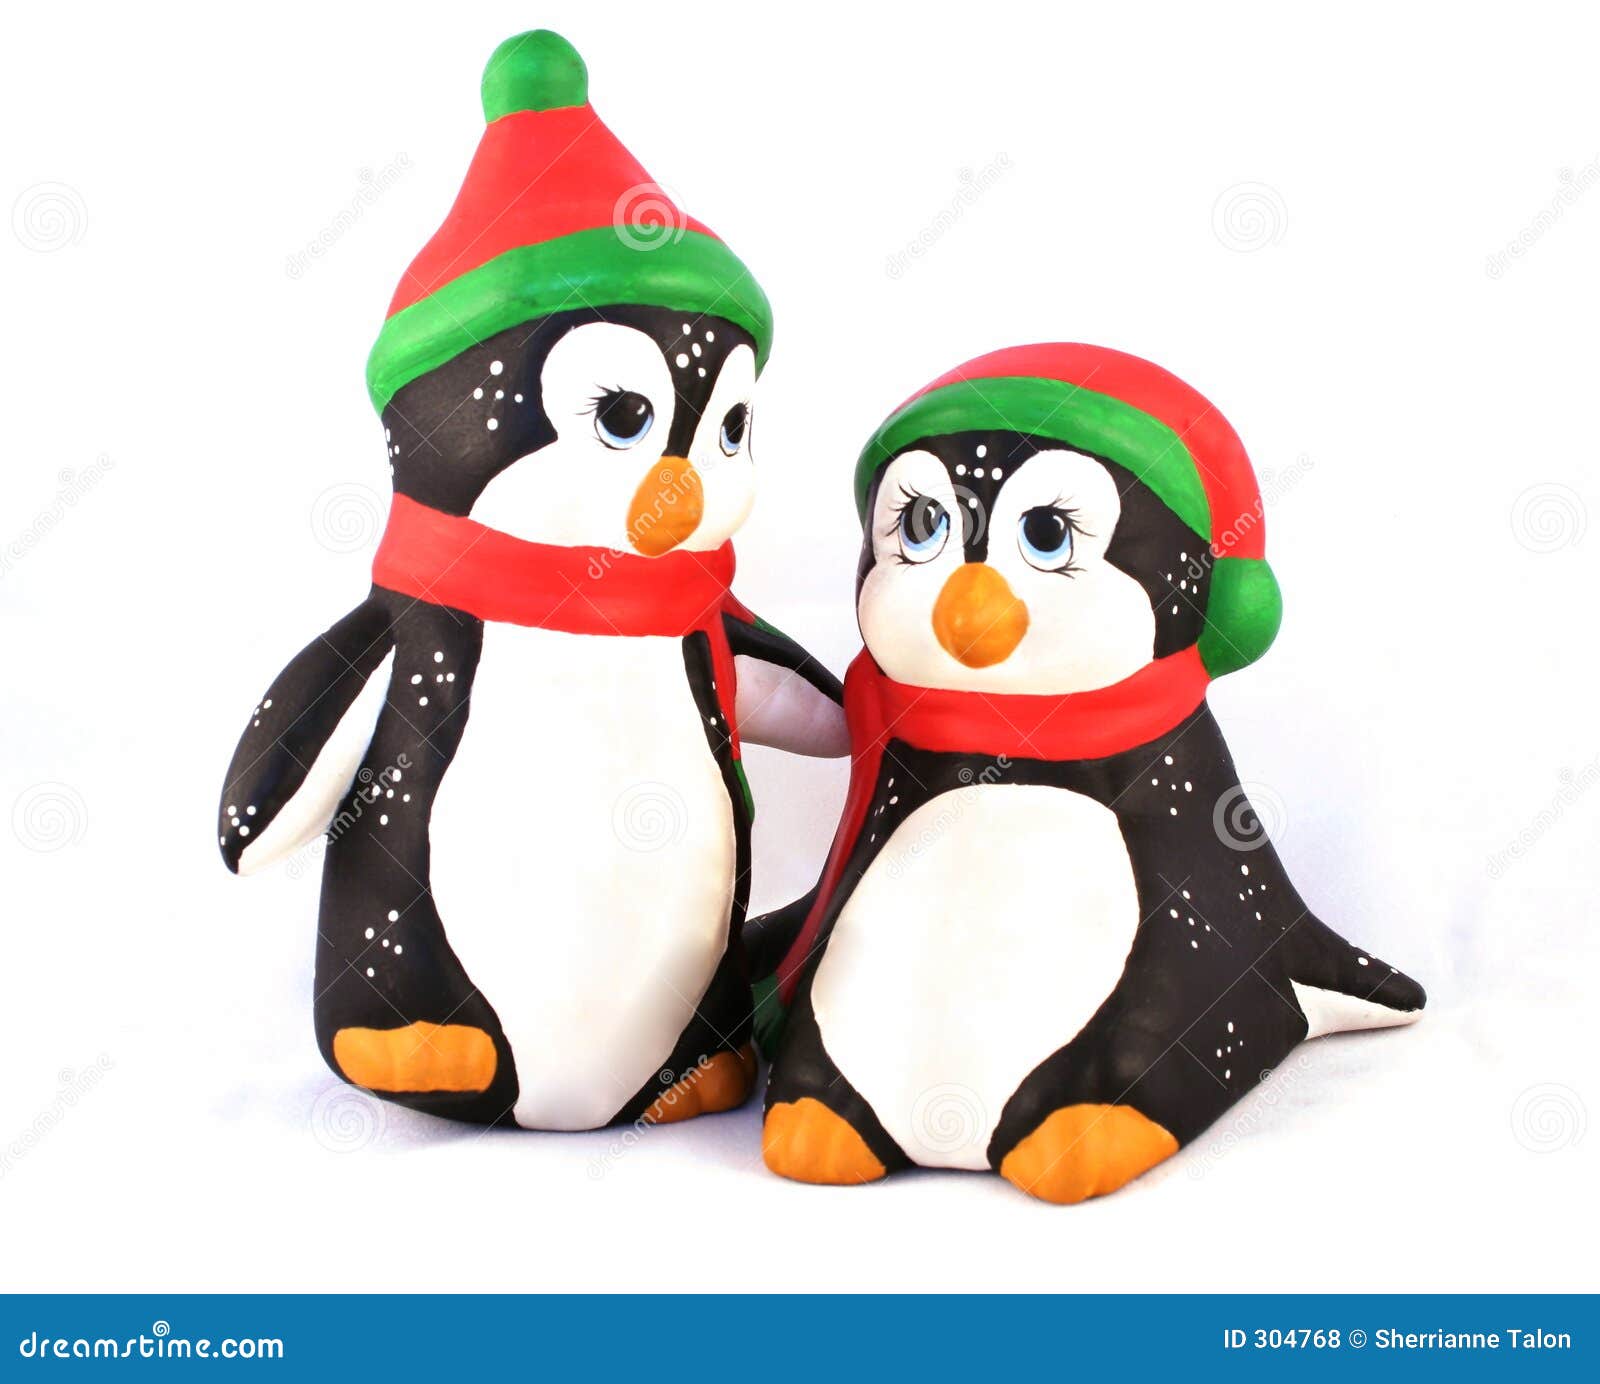 fotos de archivo libres de regalas pingüinos de la navidad image